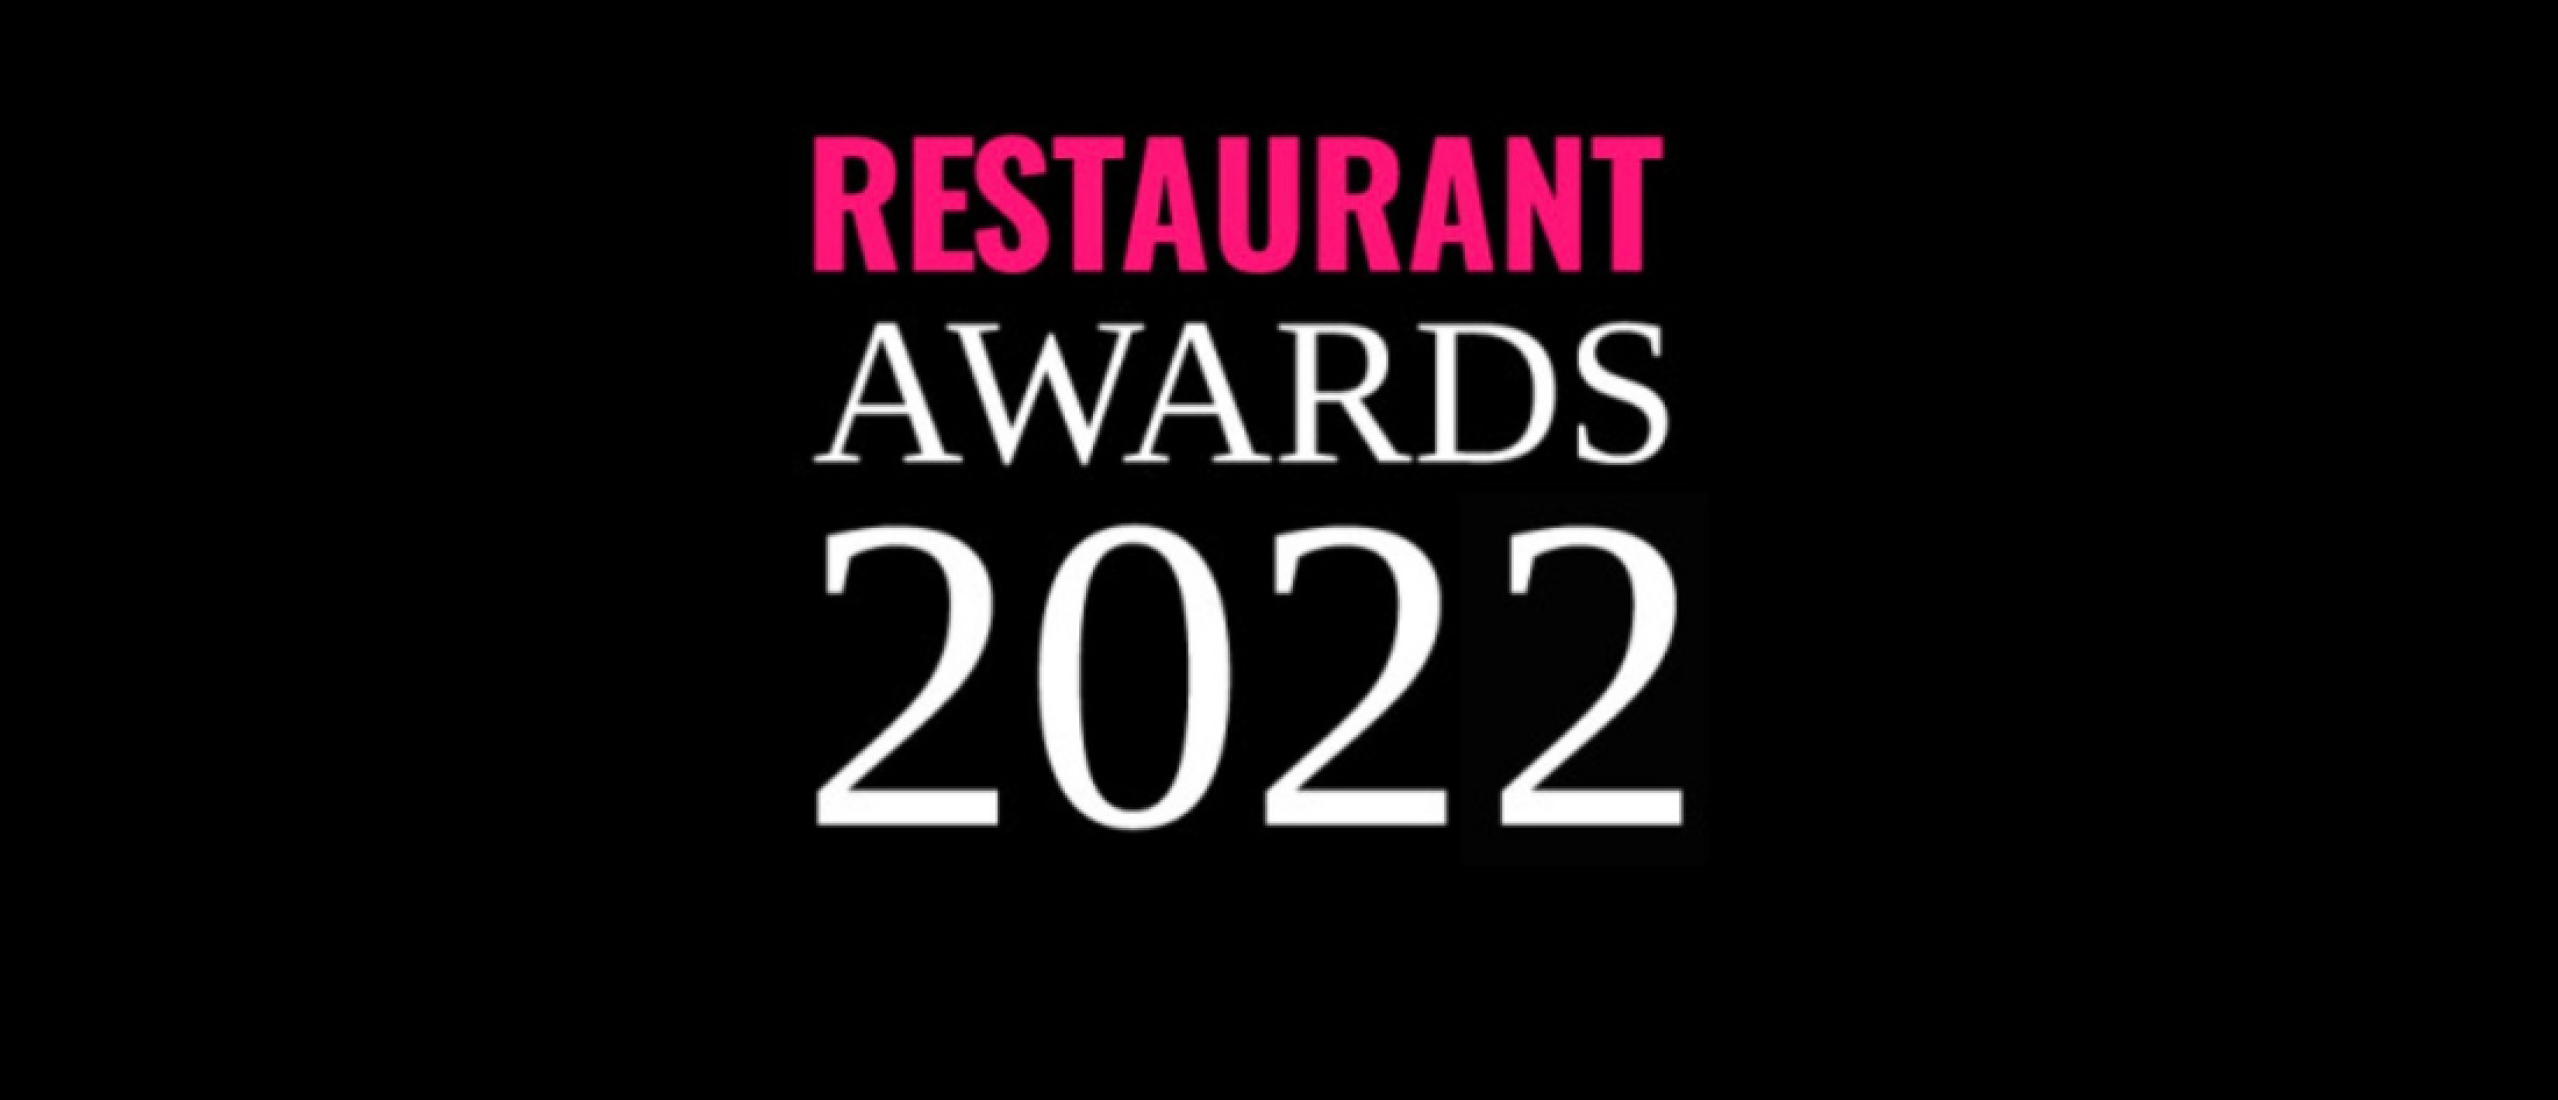 Genomineerden Restaurant Awards 2022 bekend